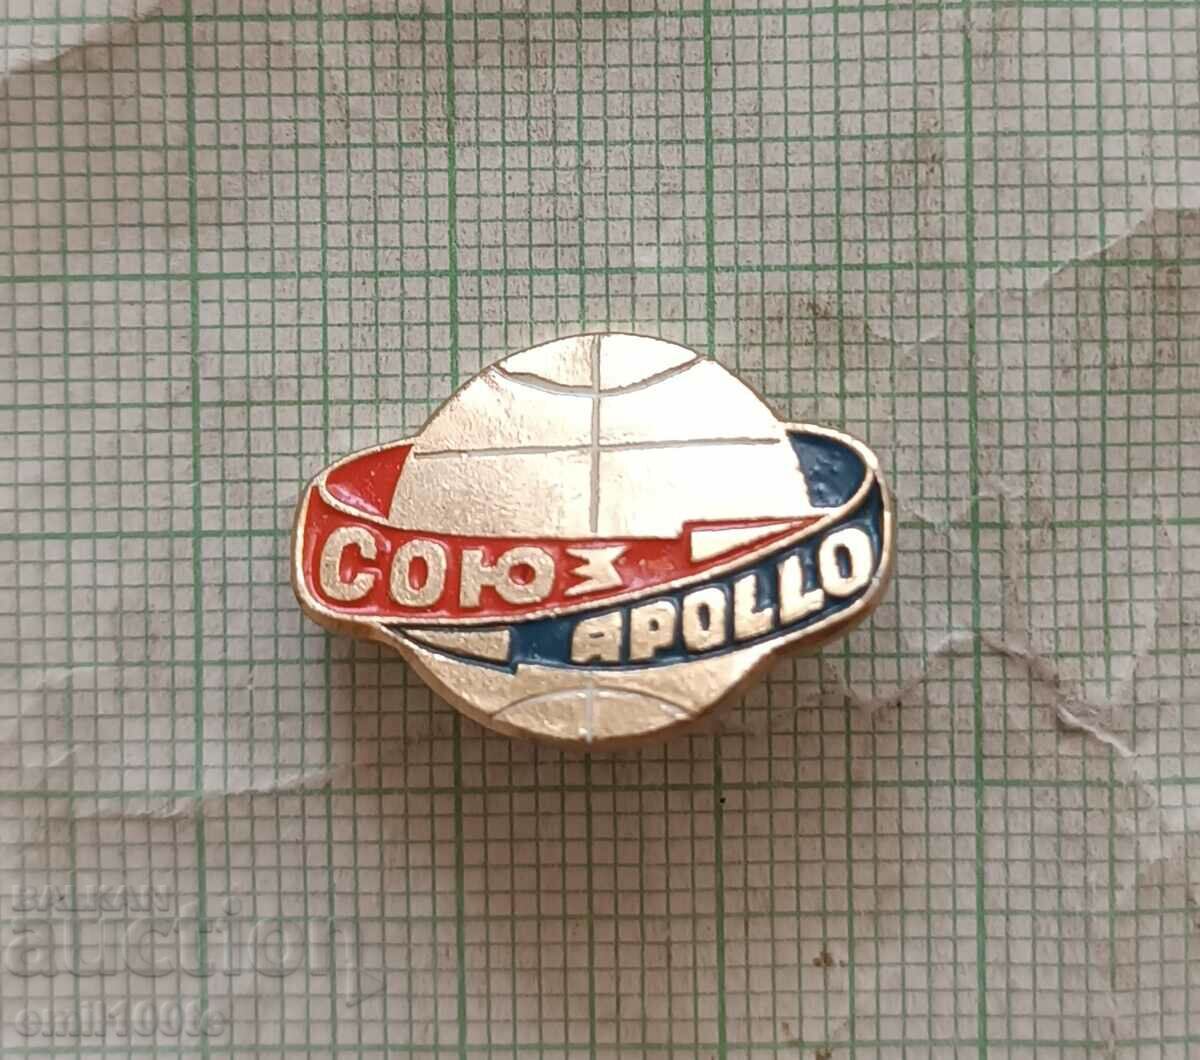 Σήμα - Soyuz Apollo cosmos USSR Soyuz Apollo